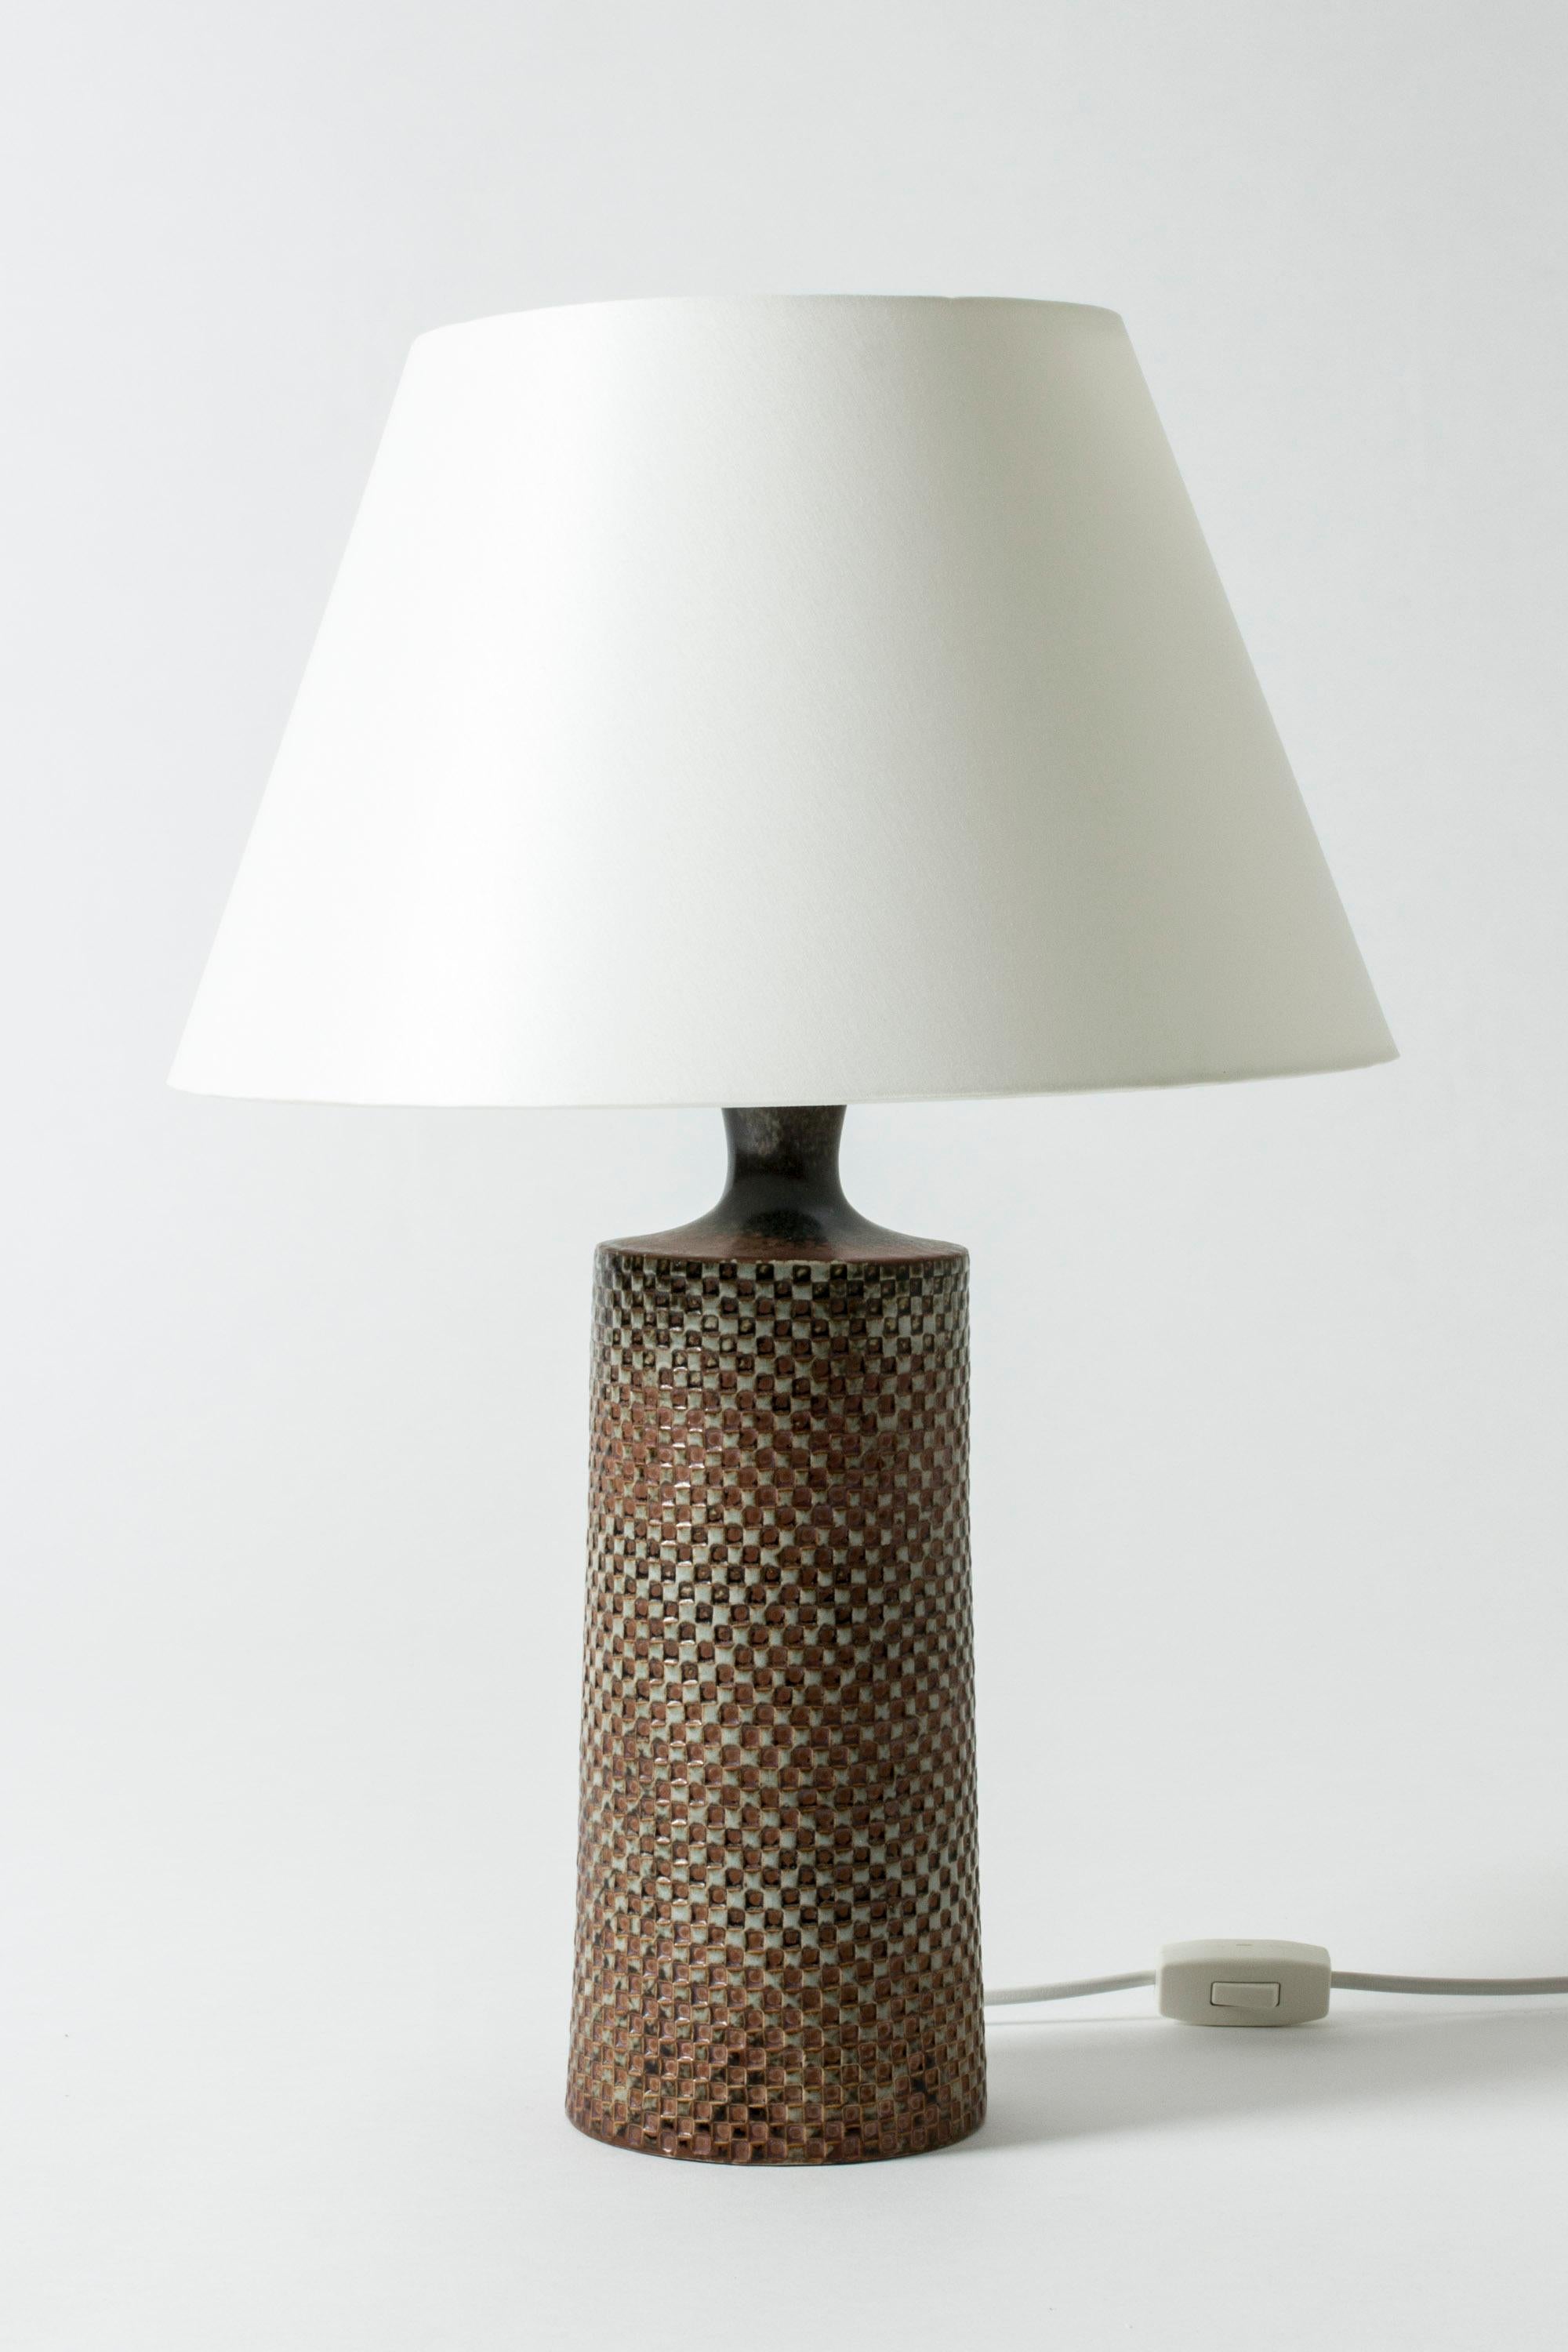 Scandinavian Modern Stoneware Table Lamp Designed by Stig Lindberg for Gustavsberg, Sweden, 1950s